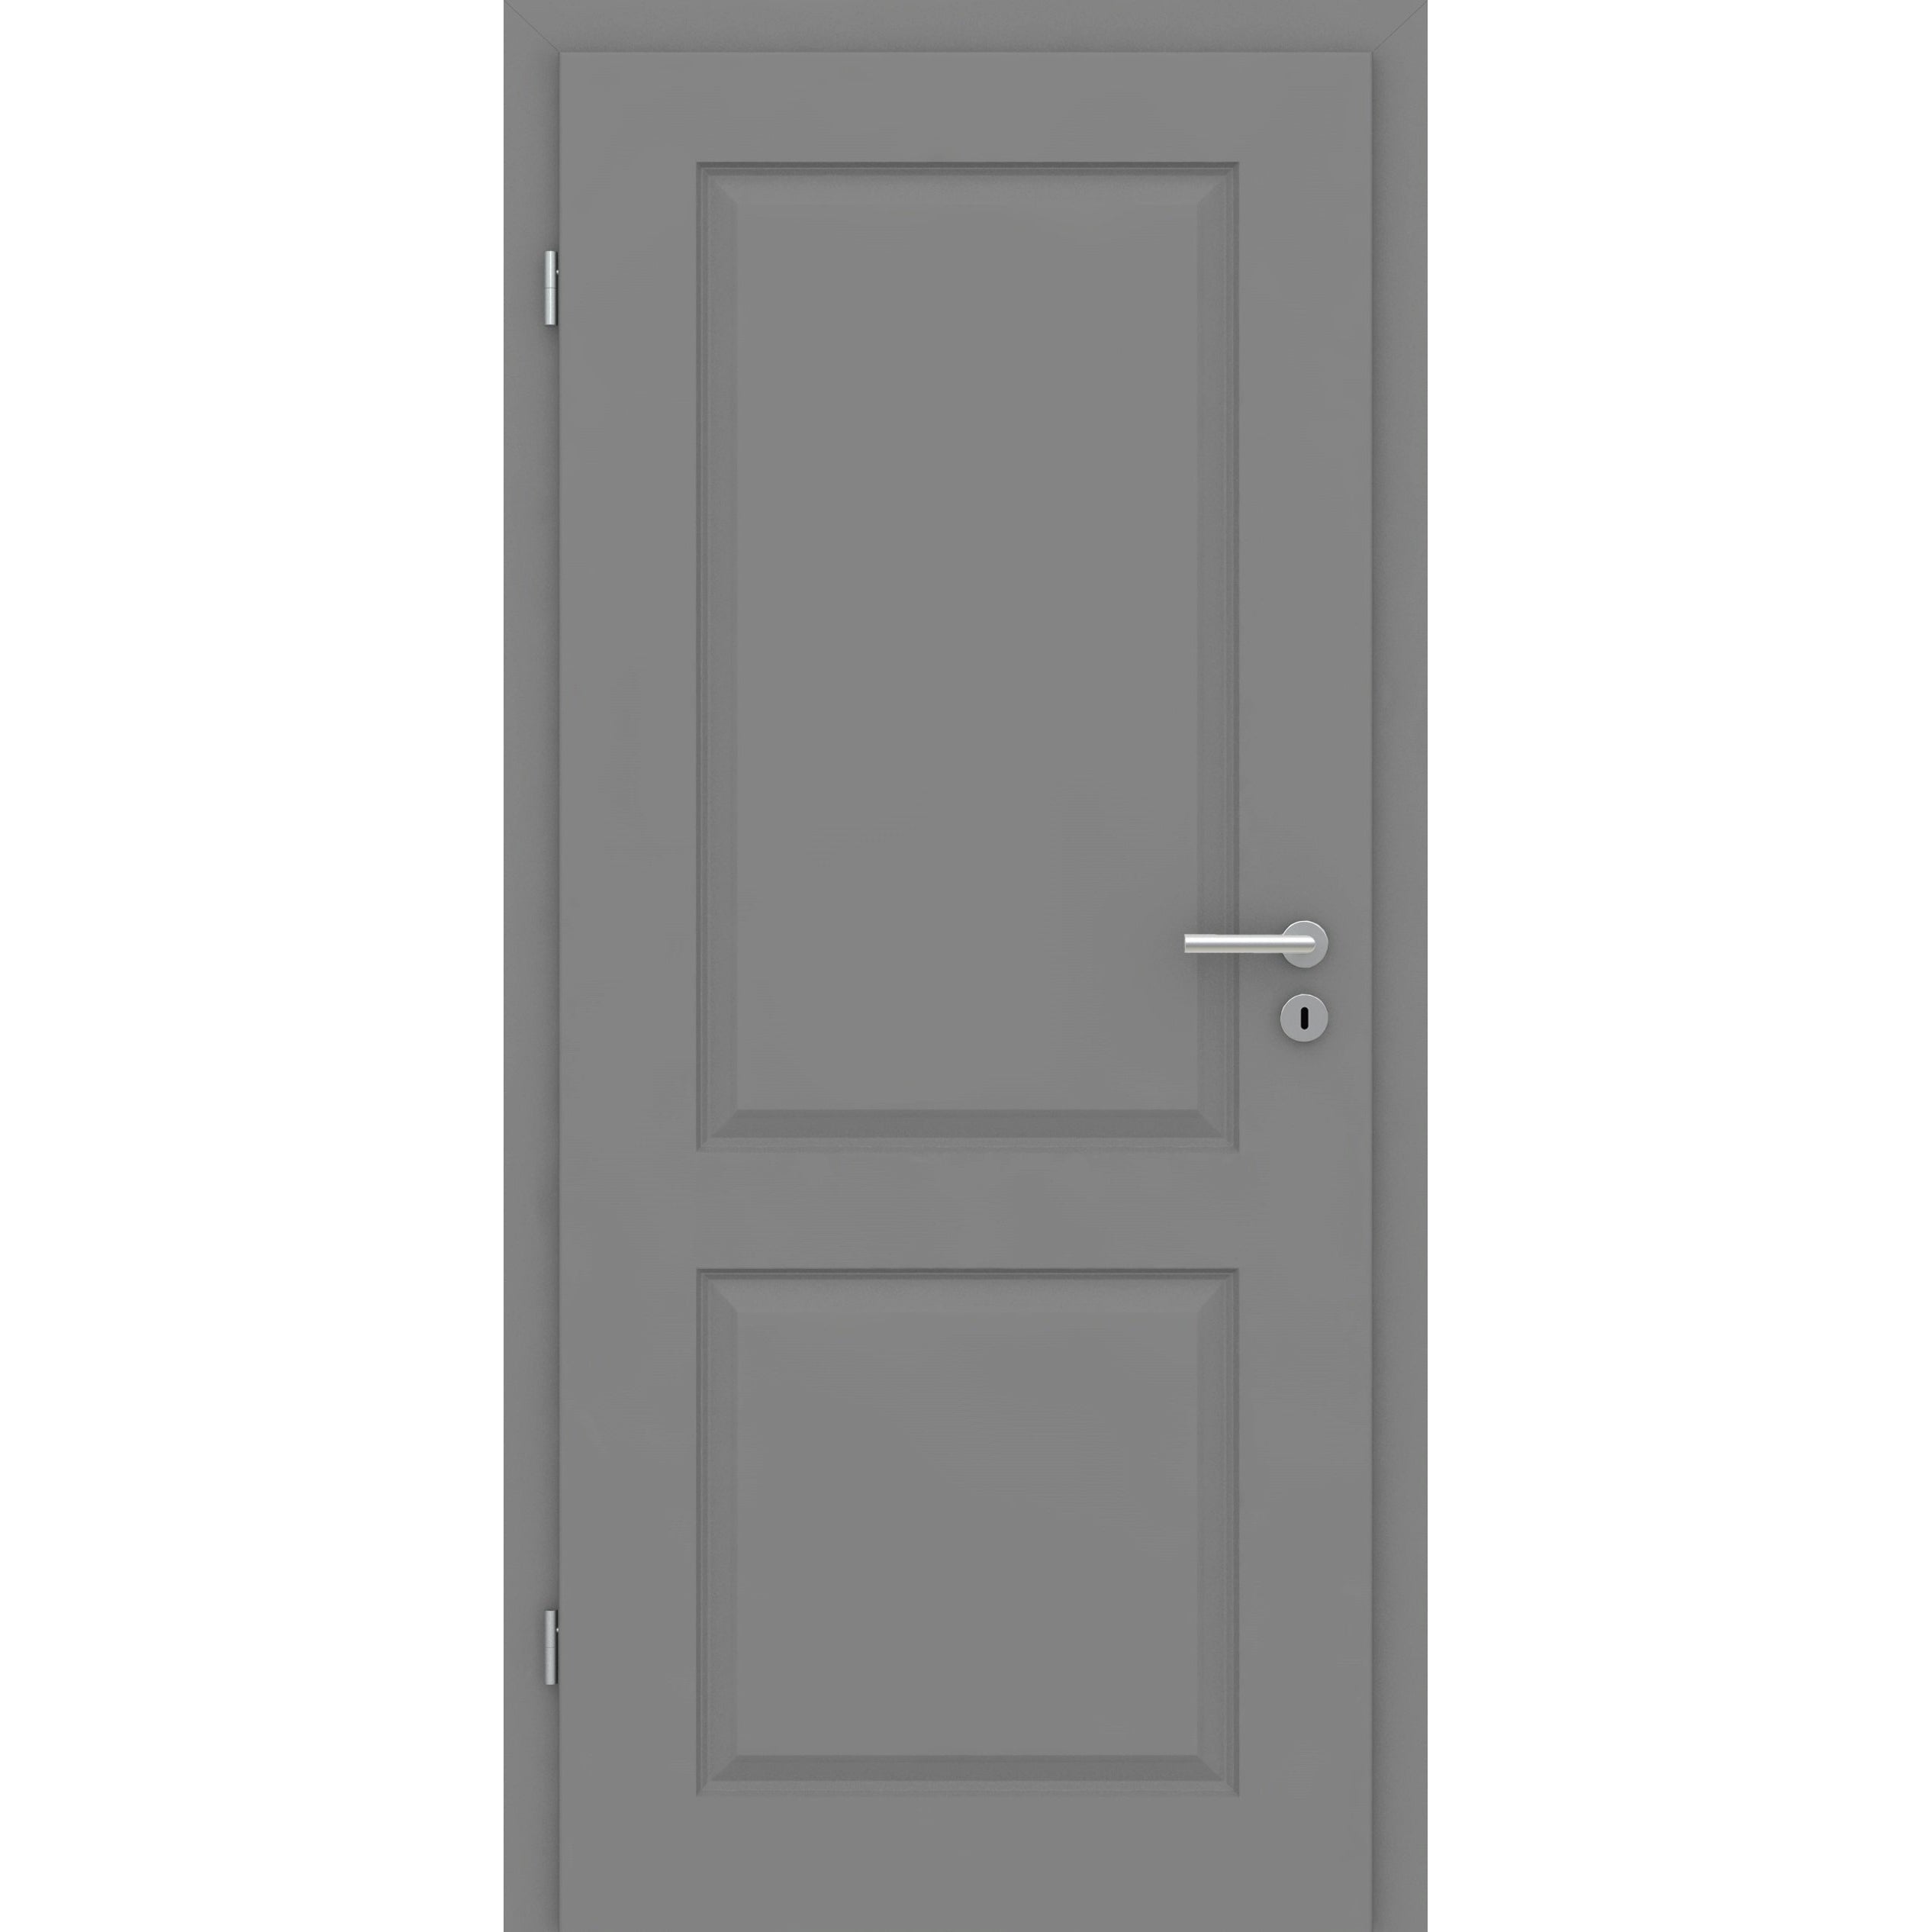 Wohnungseingangstür mit Zarge grau 2 Kassetten Designkante SK3 / KK3 - Modell Stiltür K27